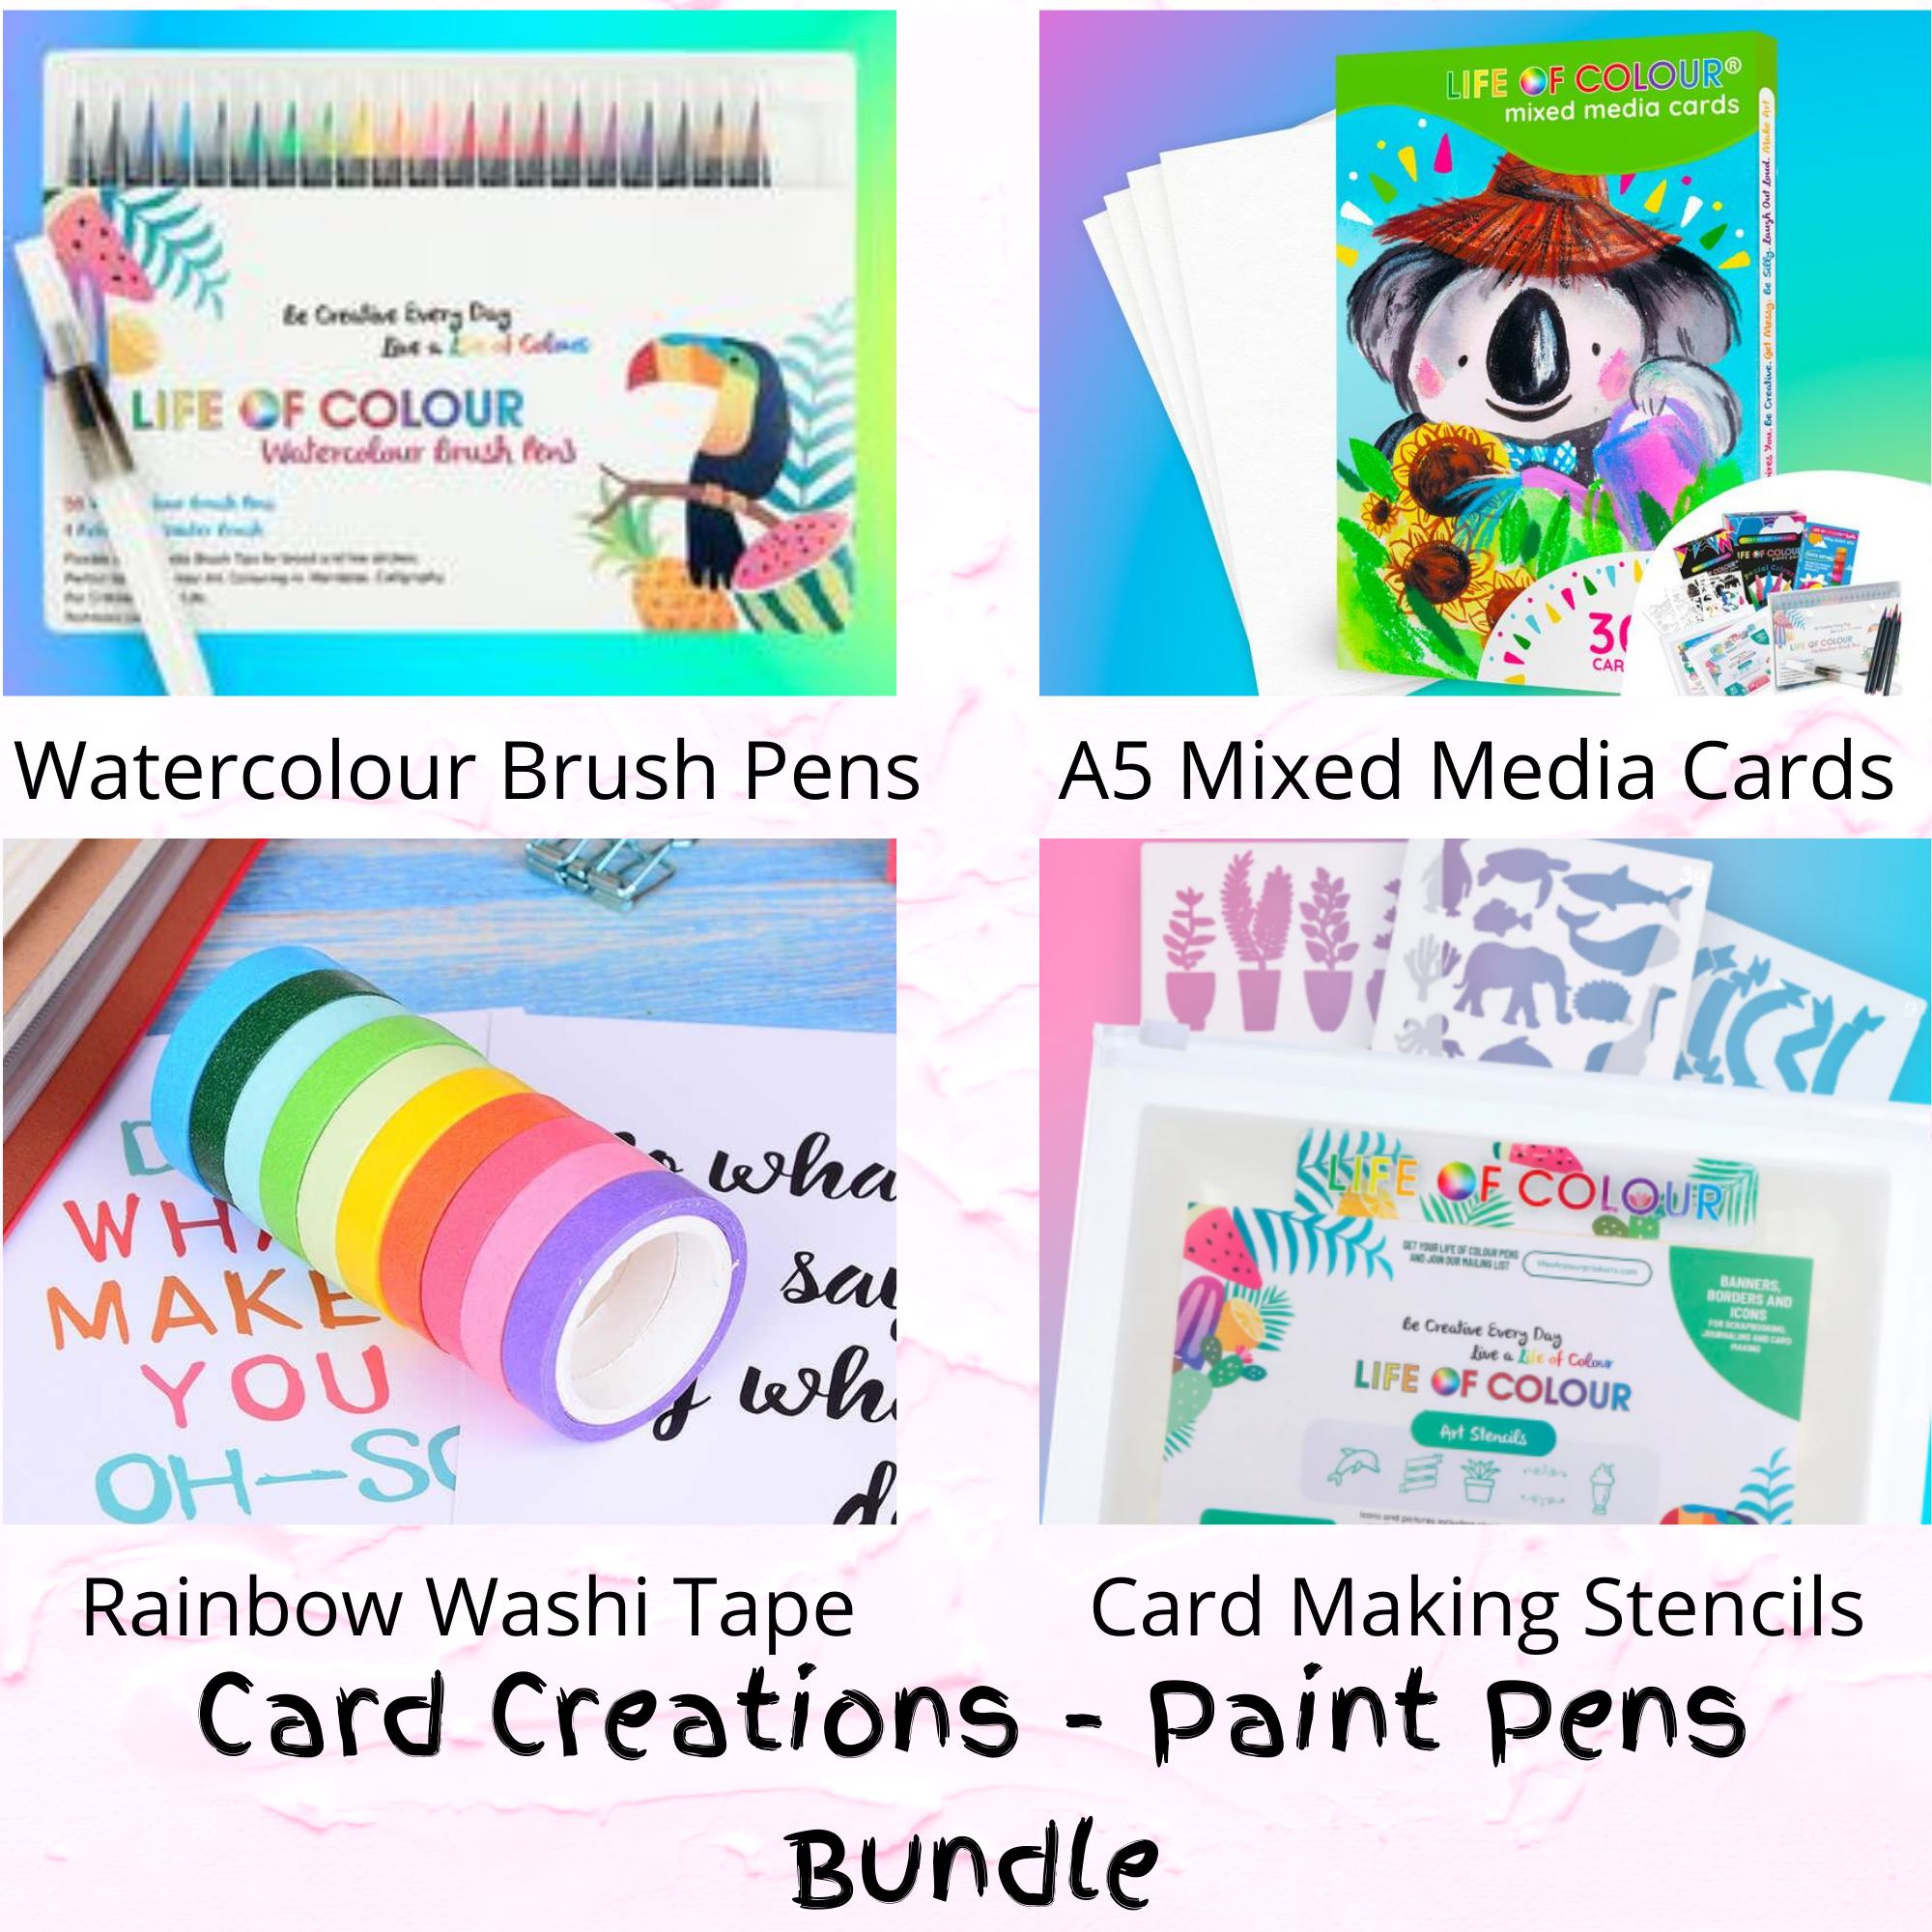 Card Creations - Paint Pens Bundle